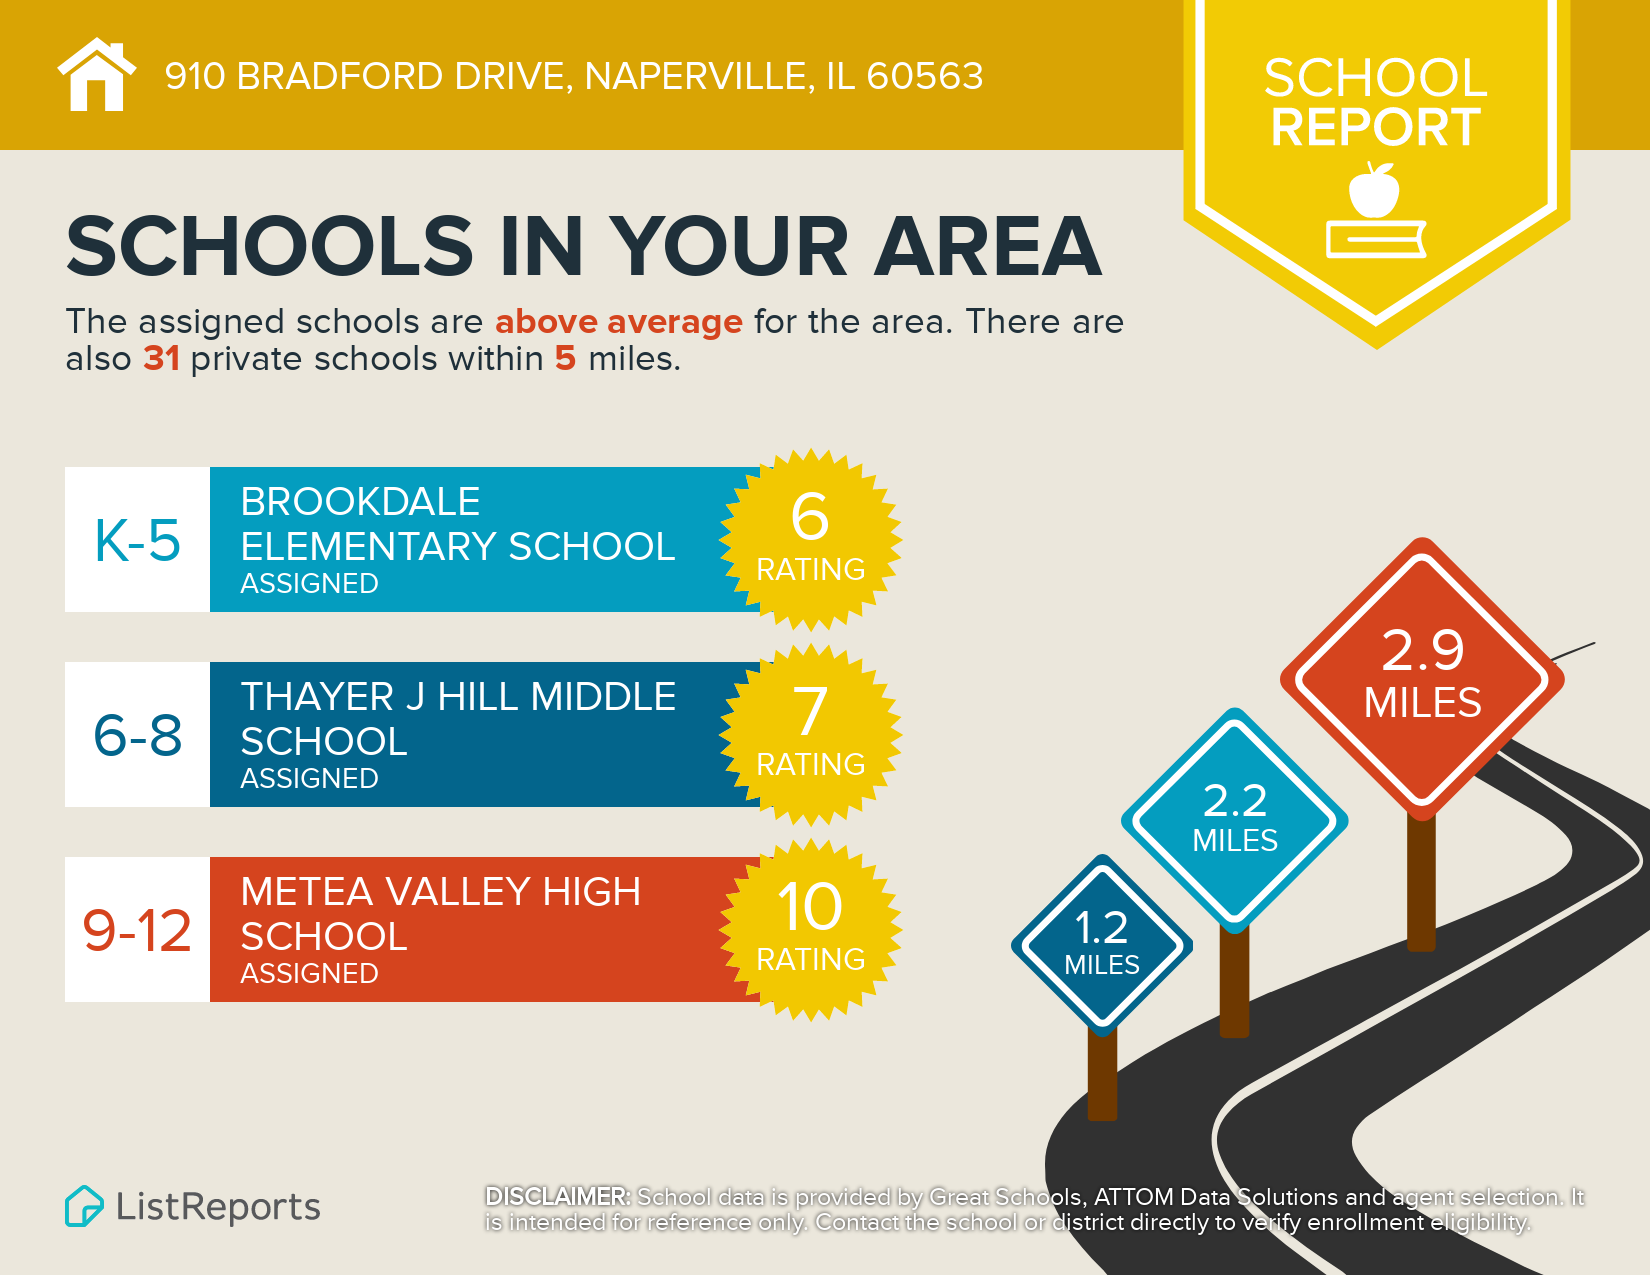 School Report for 910 Bradford Dr, Naperville, IL